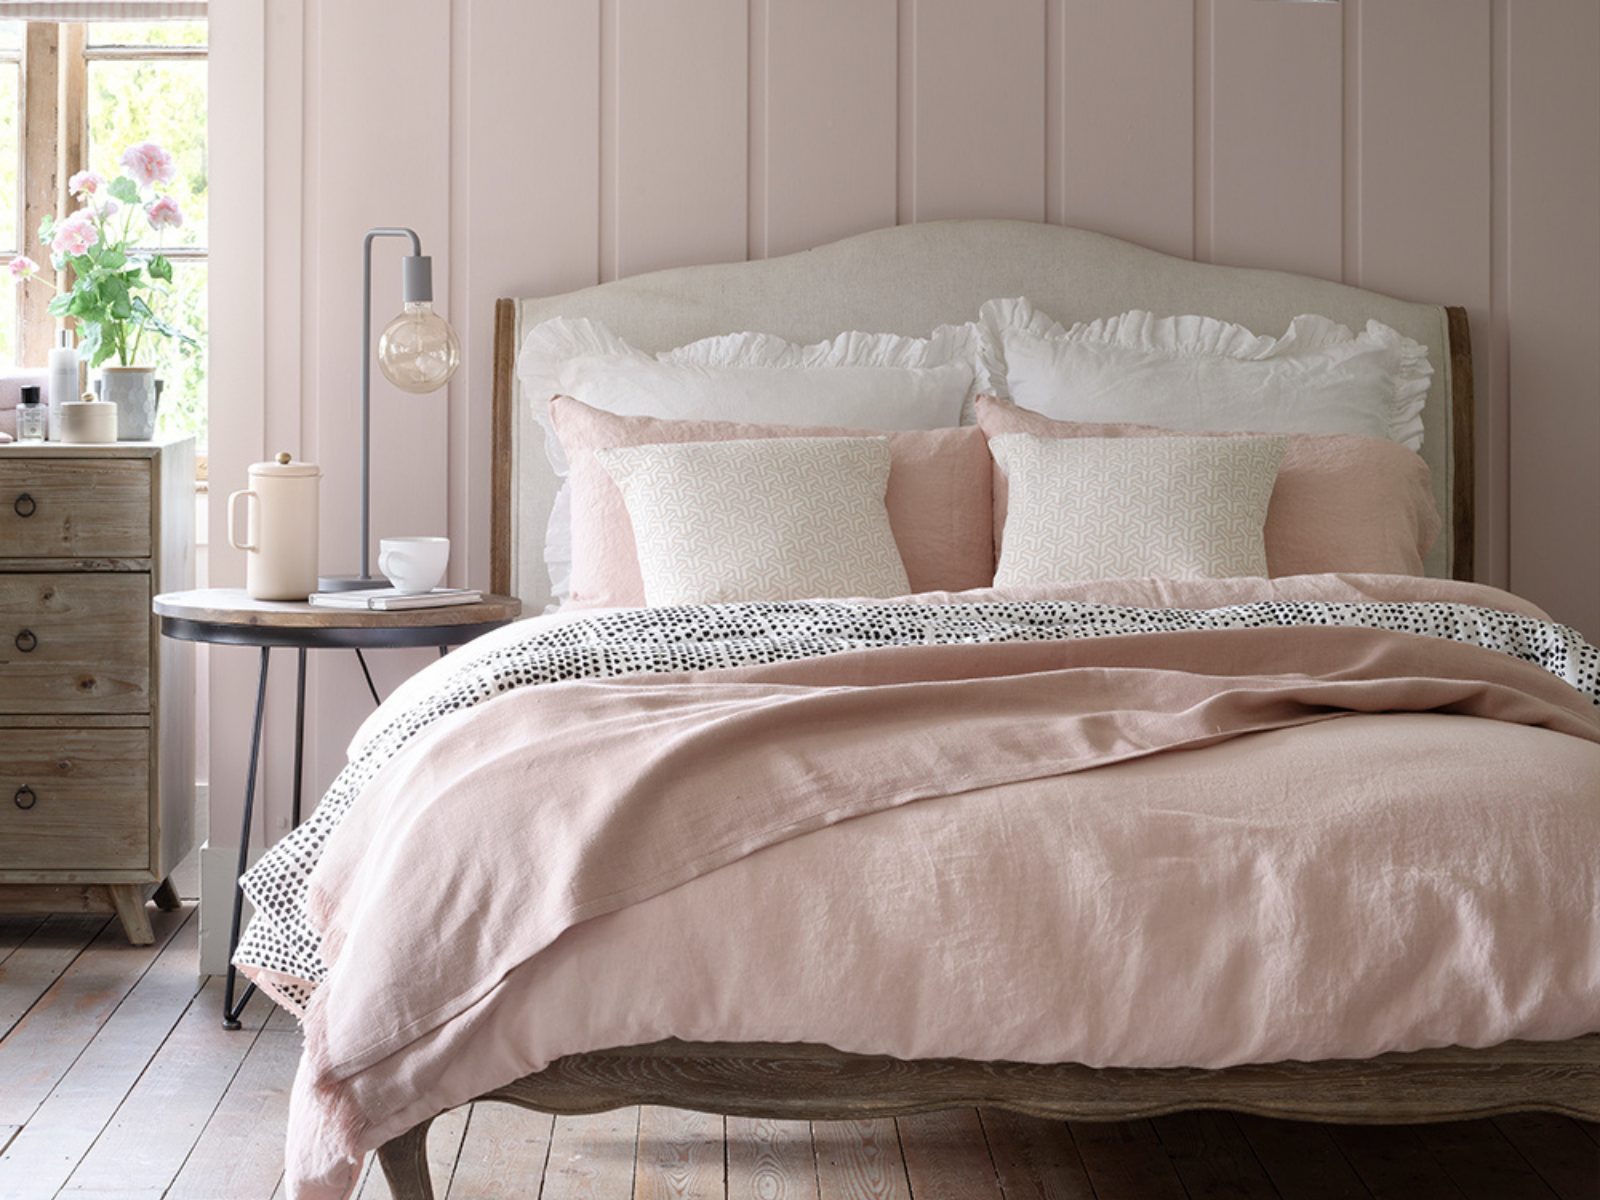 Phòng ngủ màu hồng tận dụng tối đa ánh sáng tự nhiên sáng sủa, thoáng mát